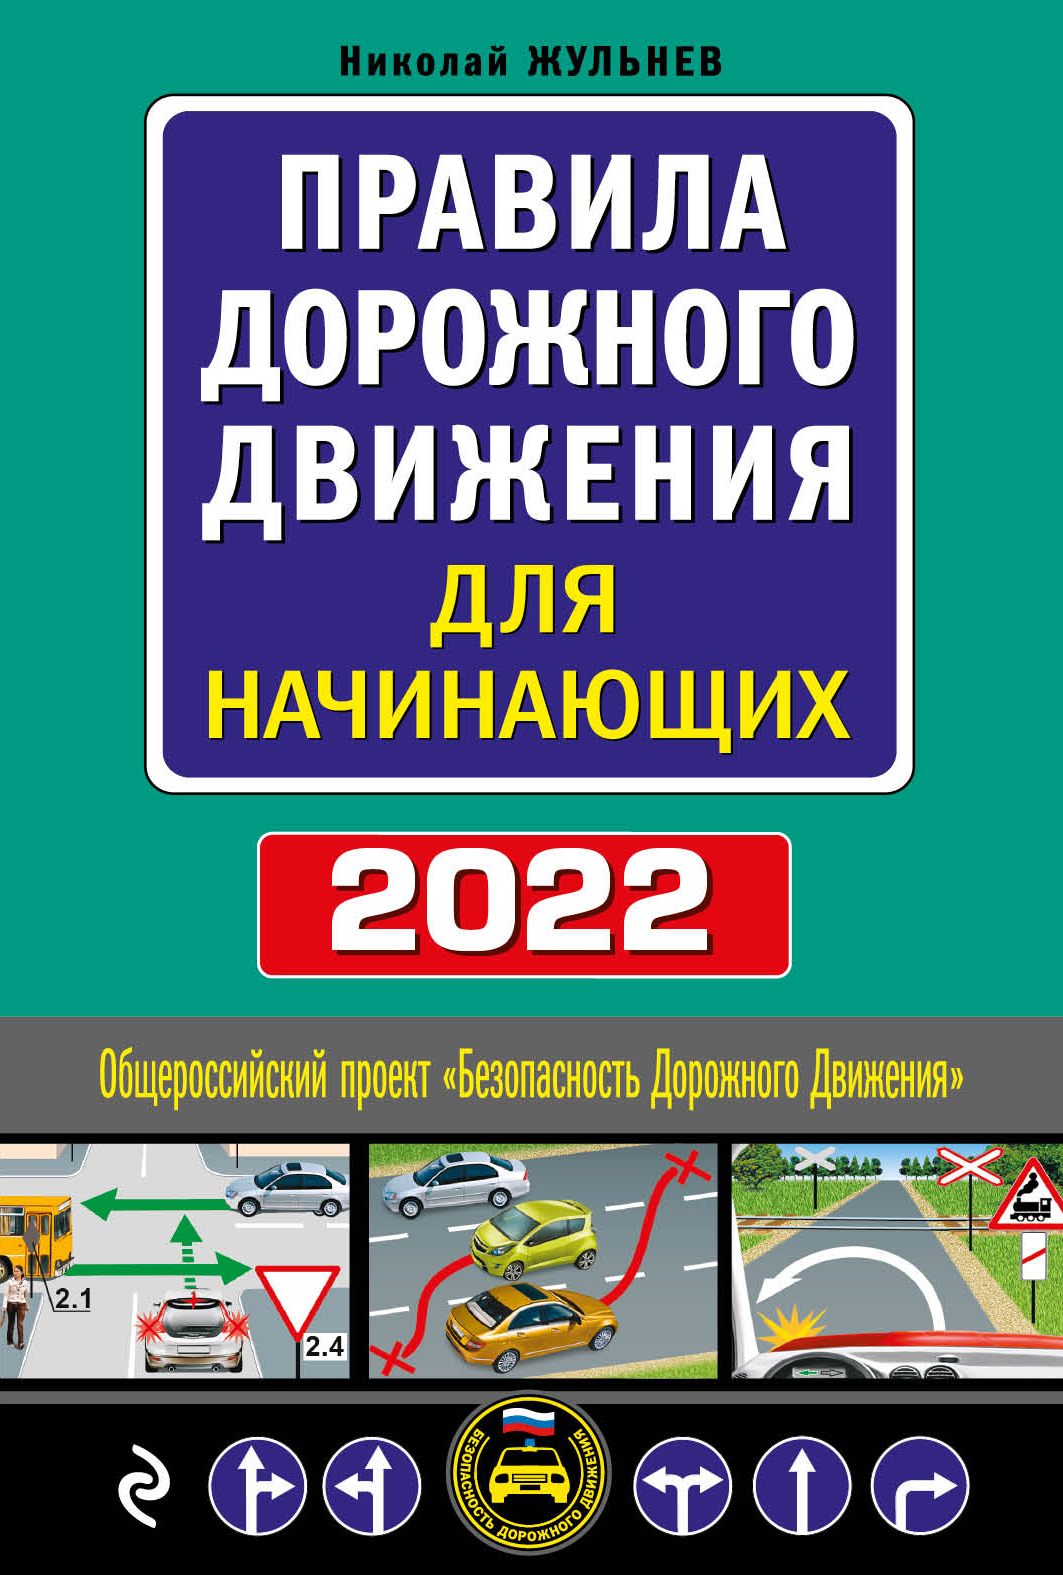  ..       .  2022  